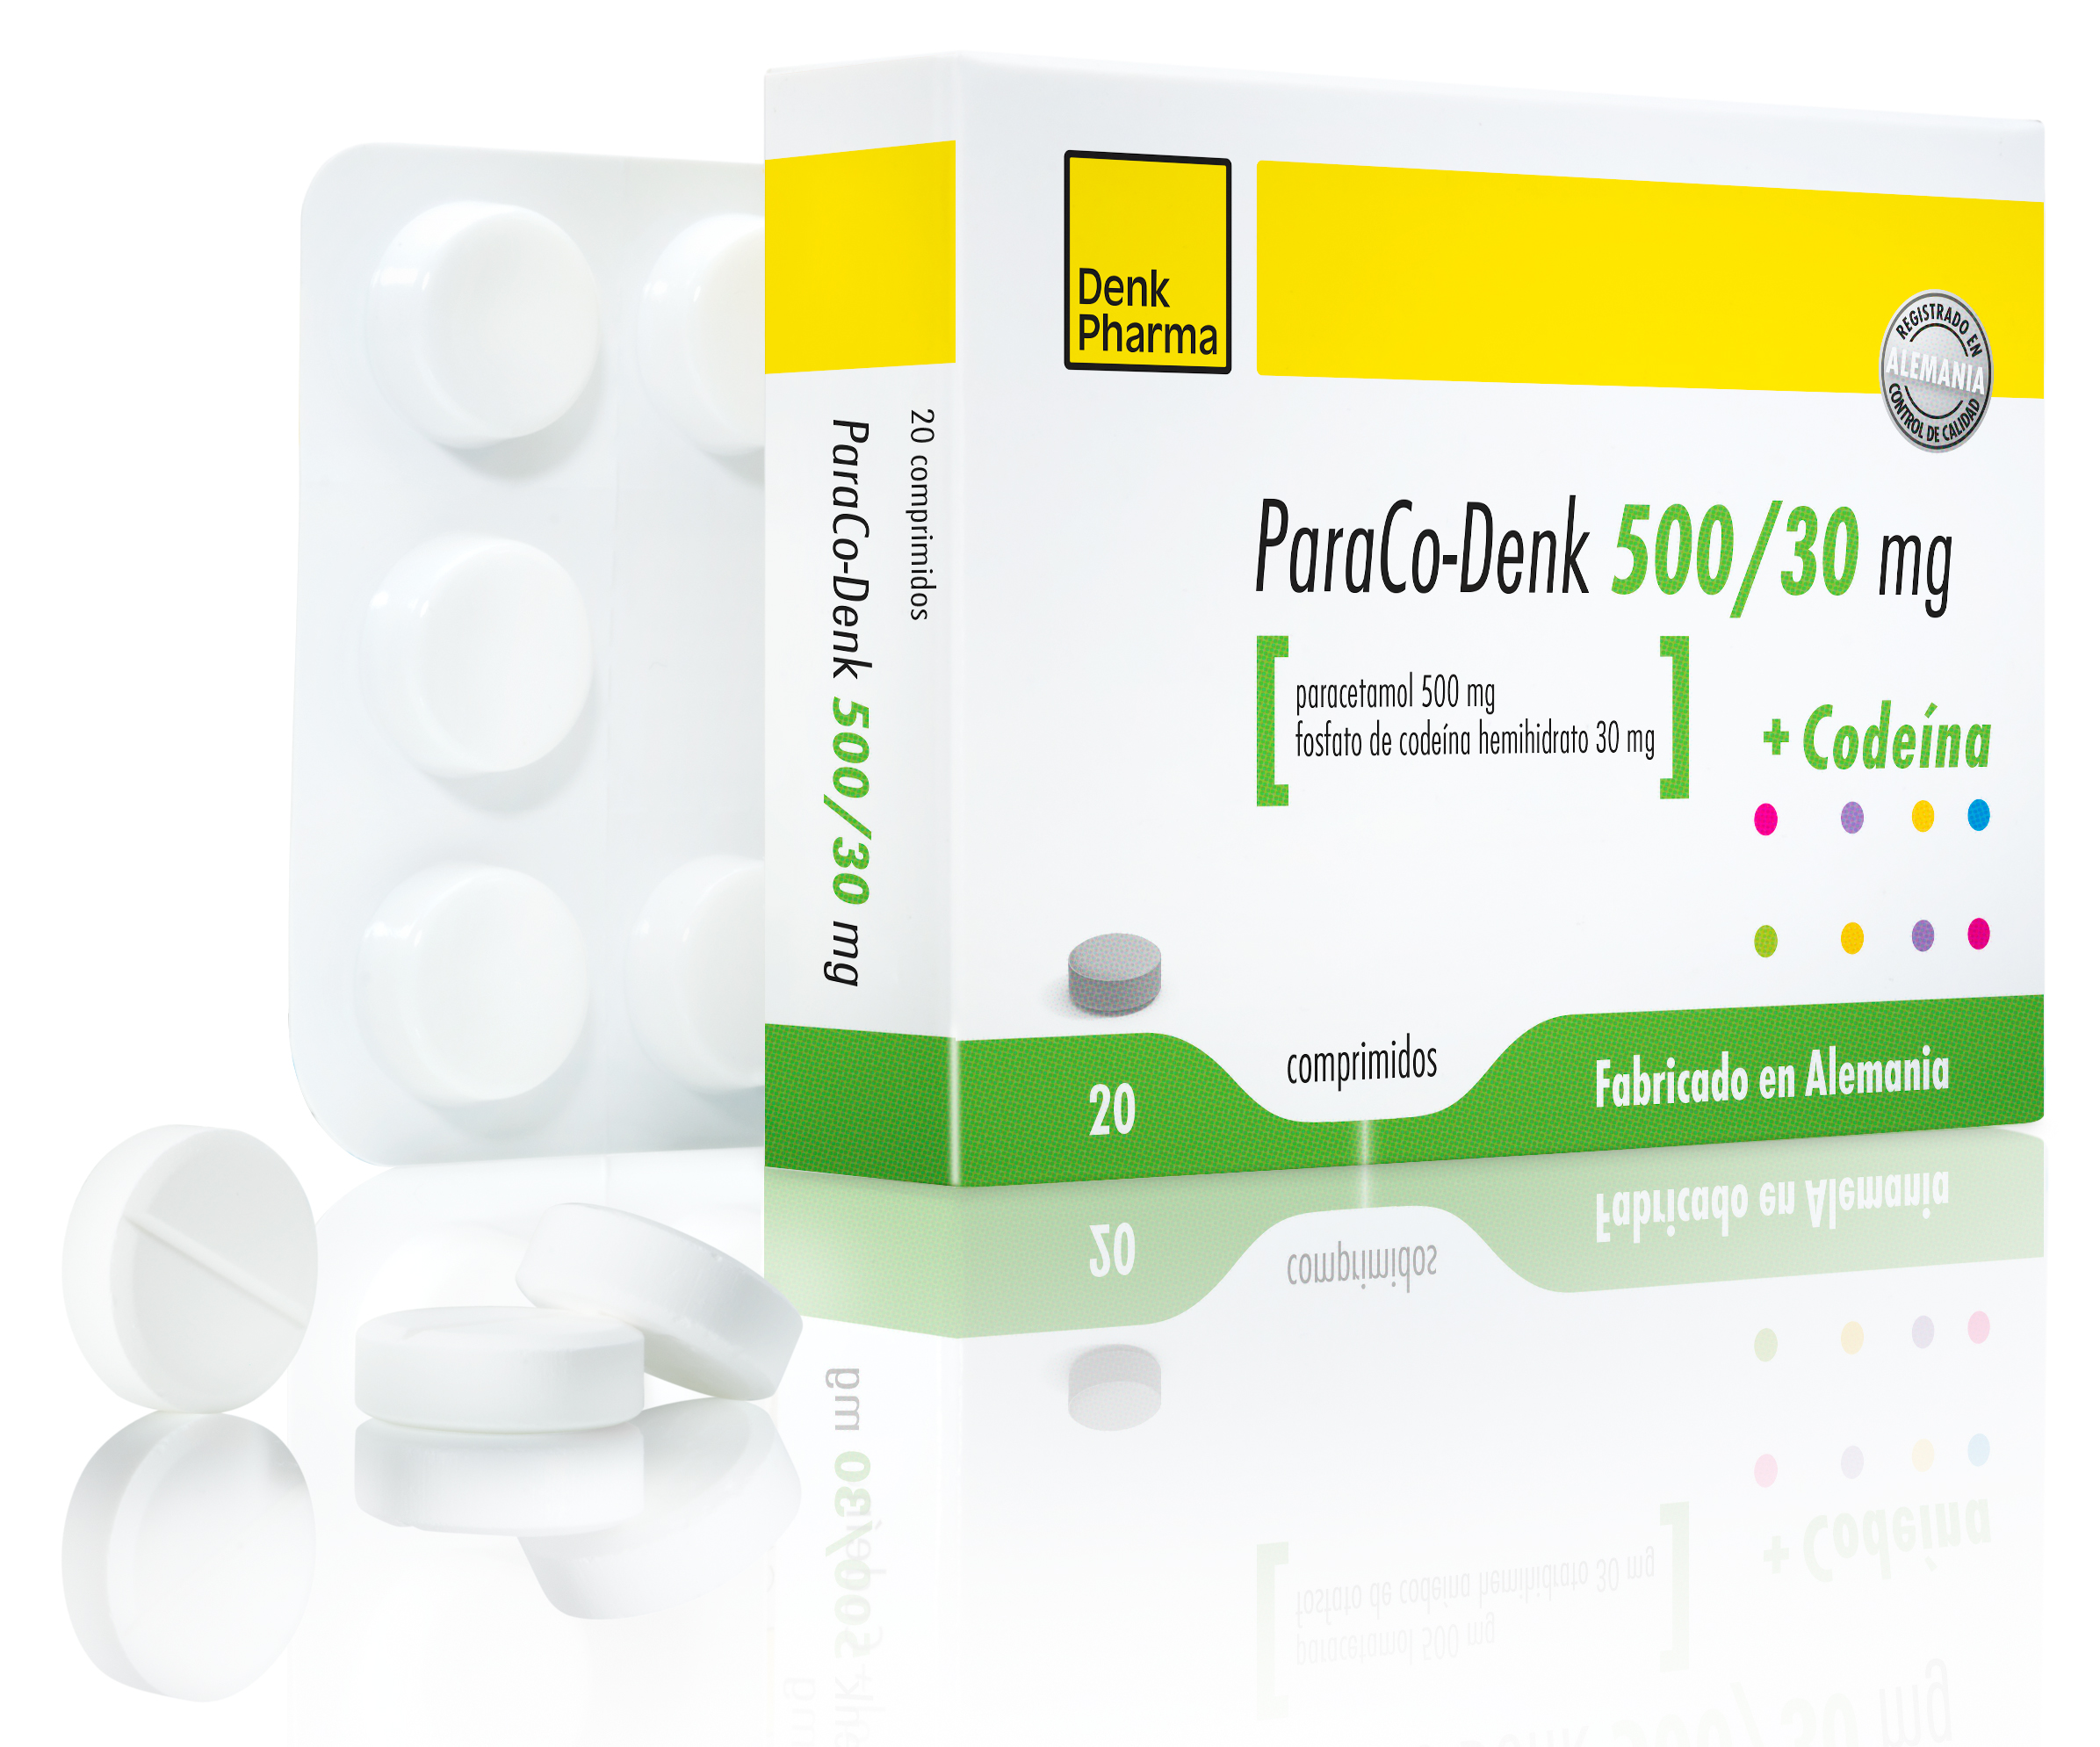 ParaCo Denk 500/30 mg - DENK